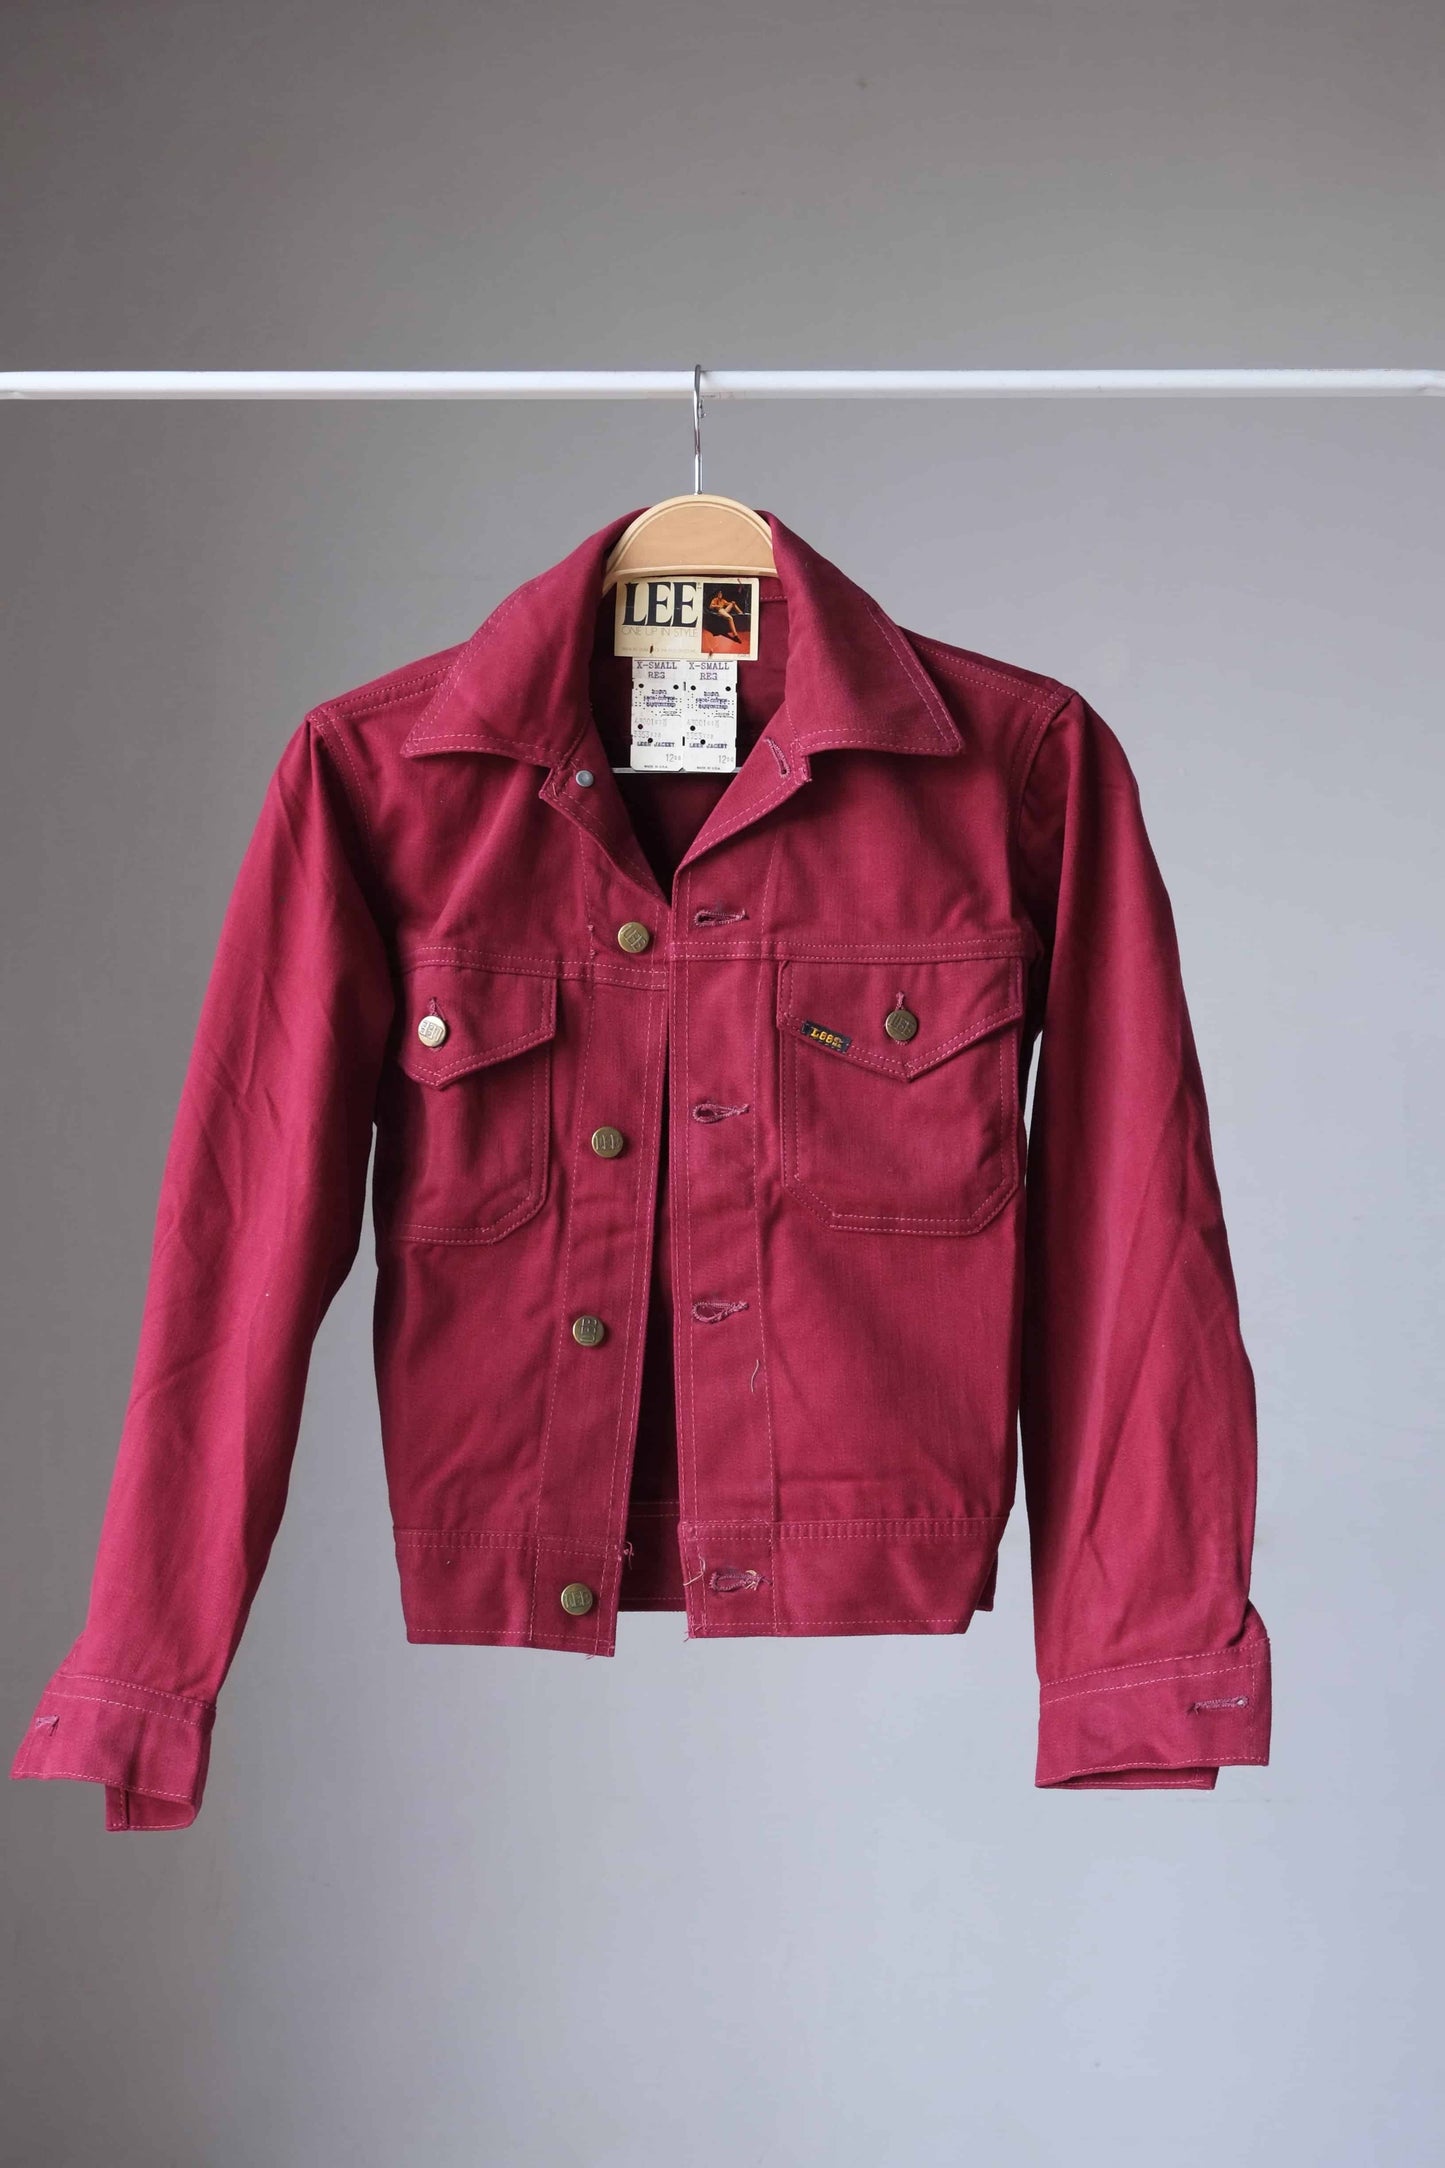 LEE Vintage 70's Denim Jacket burgundy on hanger